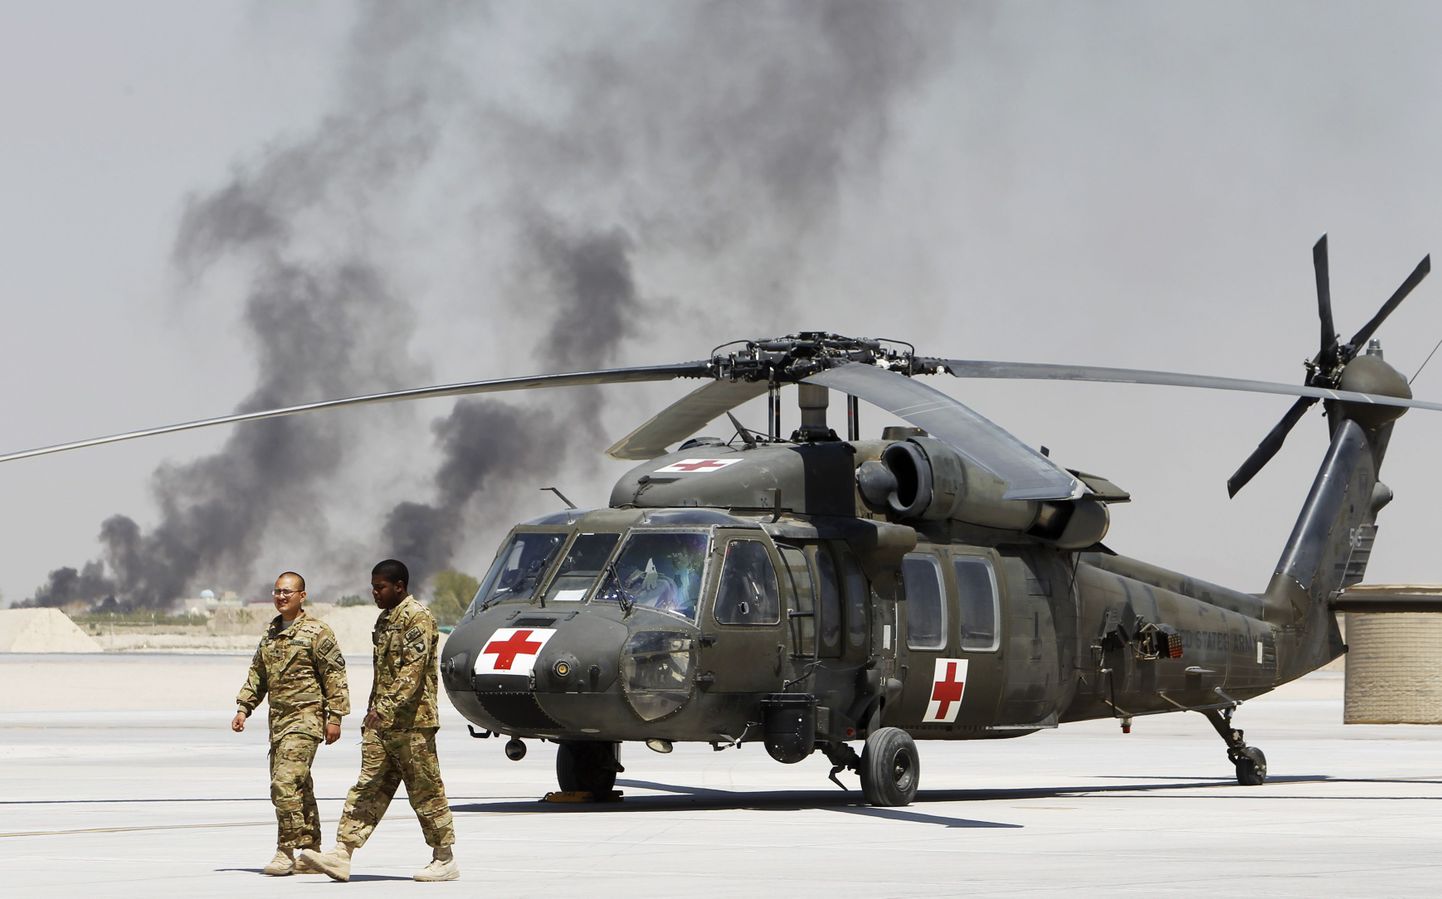 Вертолет медицинской службы в Афганистане. Иллюстративное фото